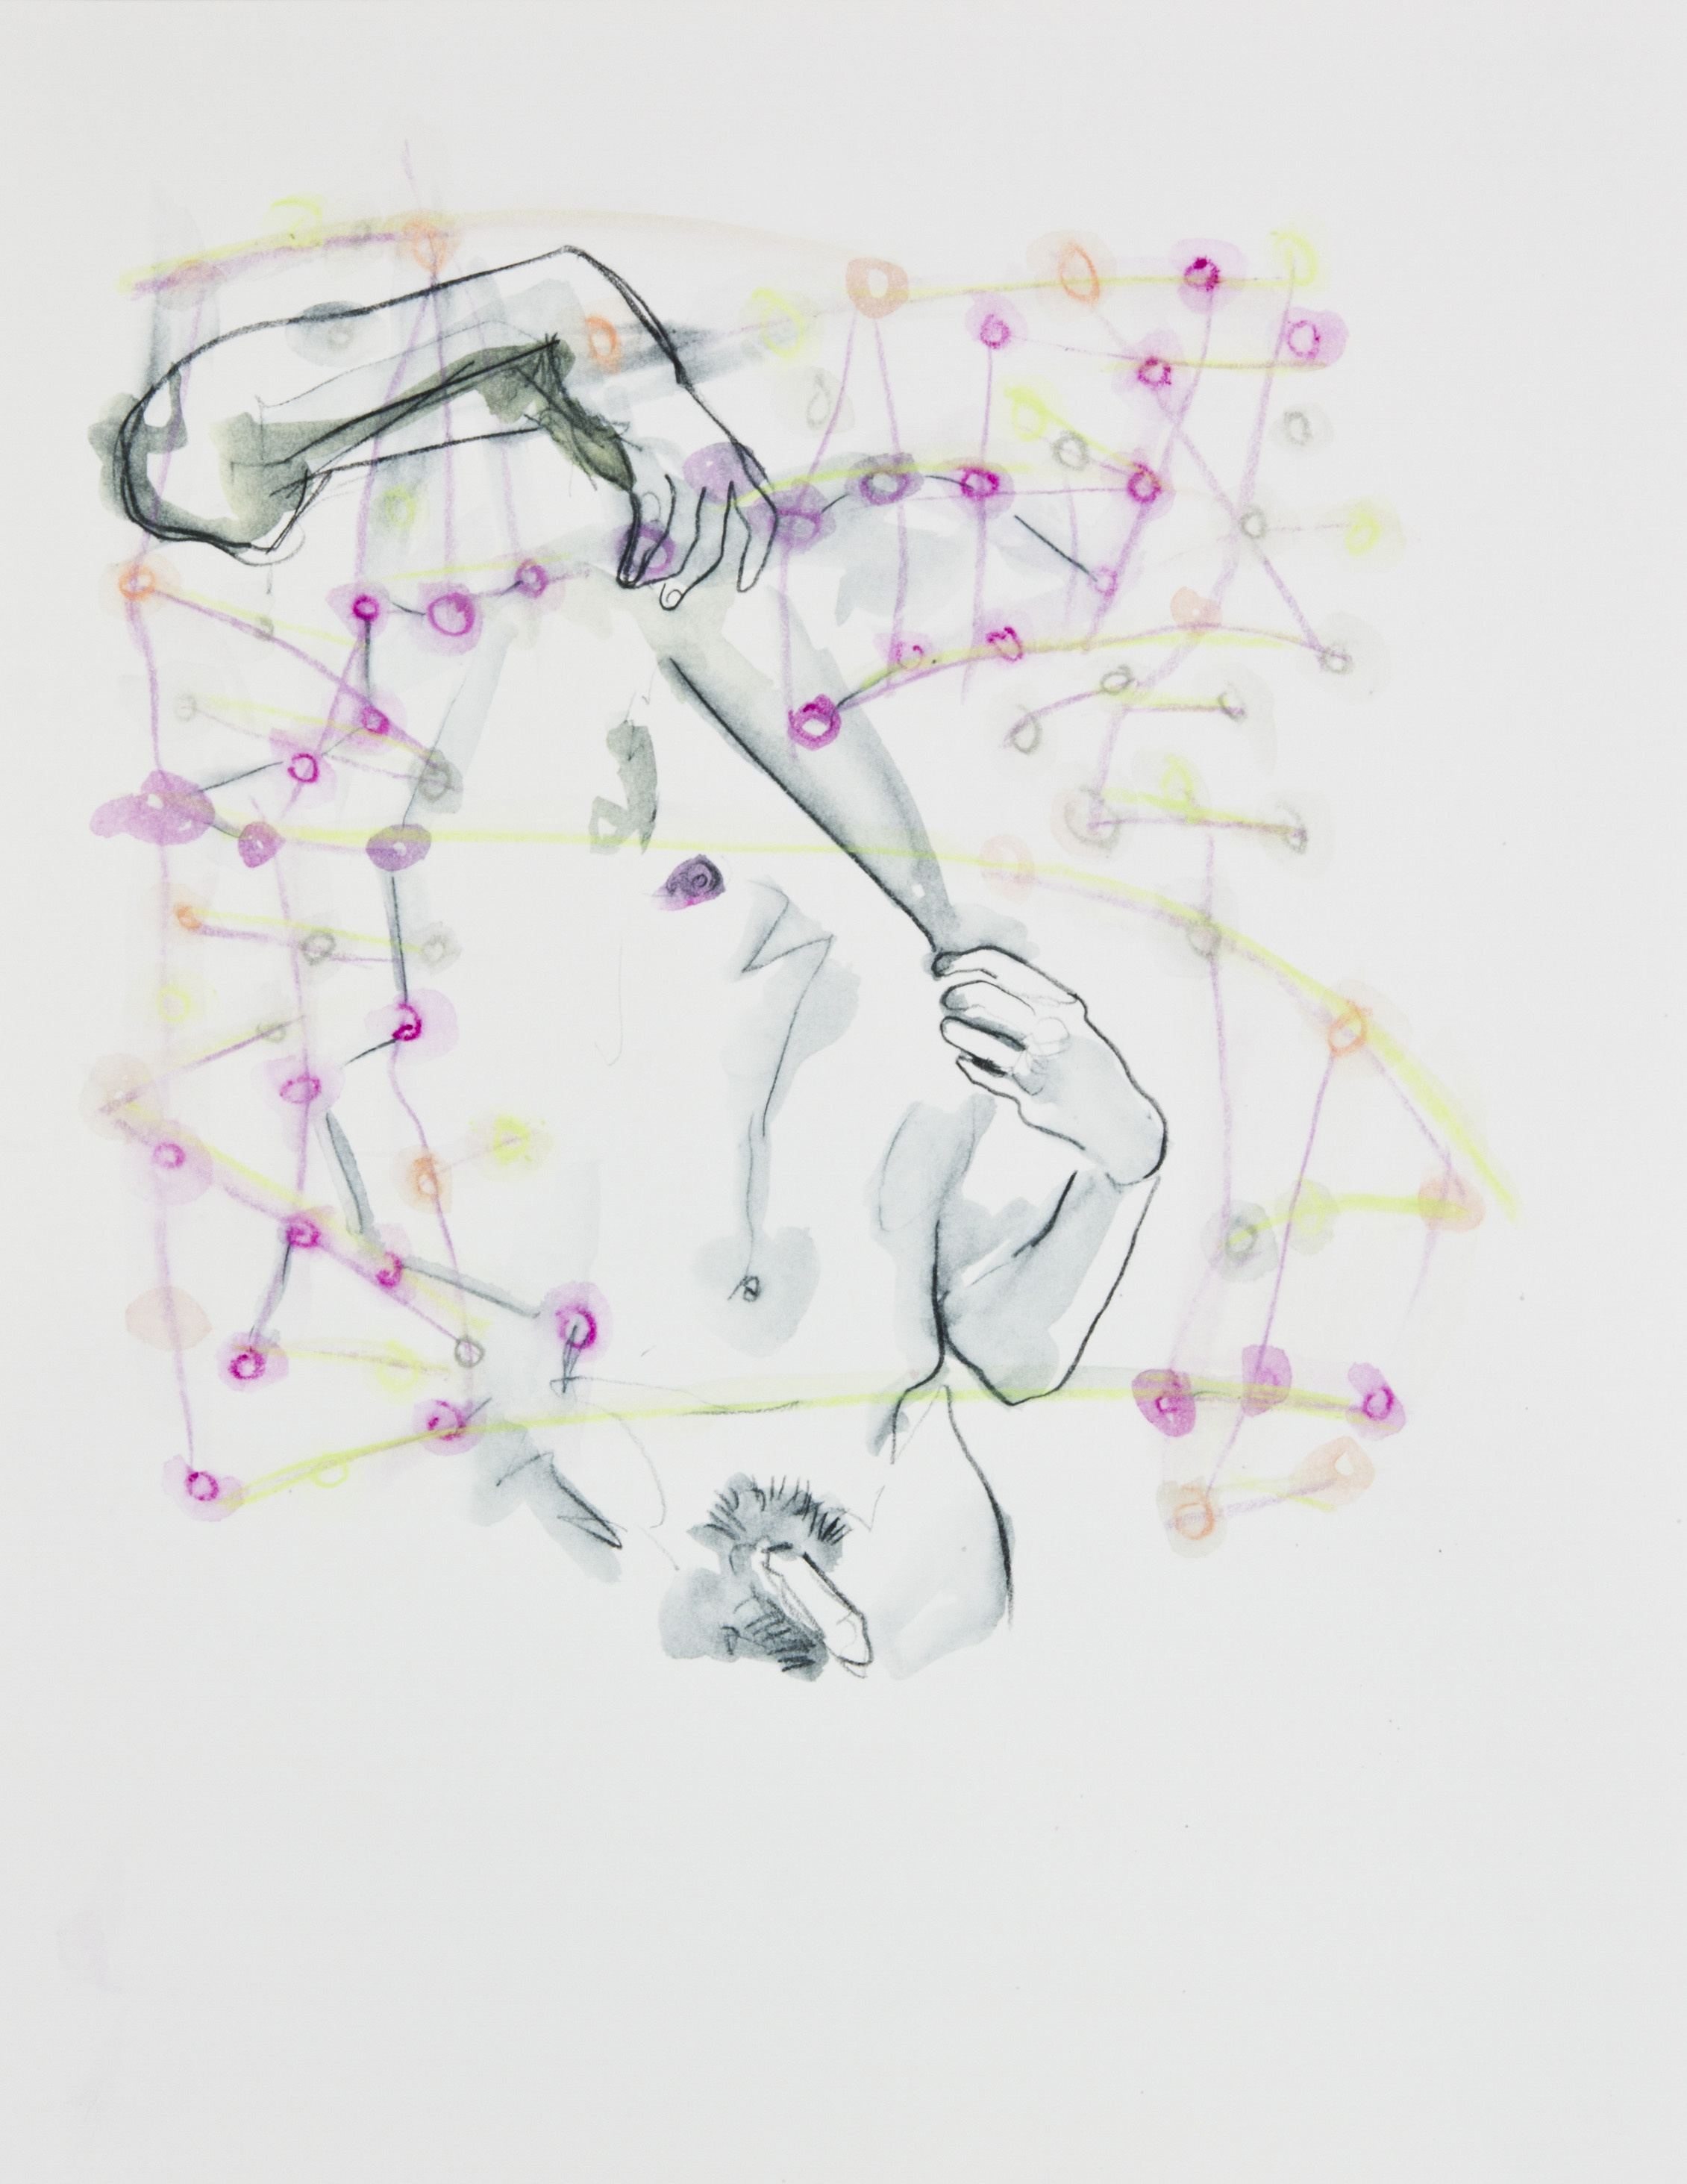 Cosmic Confetti, 2013, graphite and watercolor pencil on paper, 11x14 inches